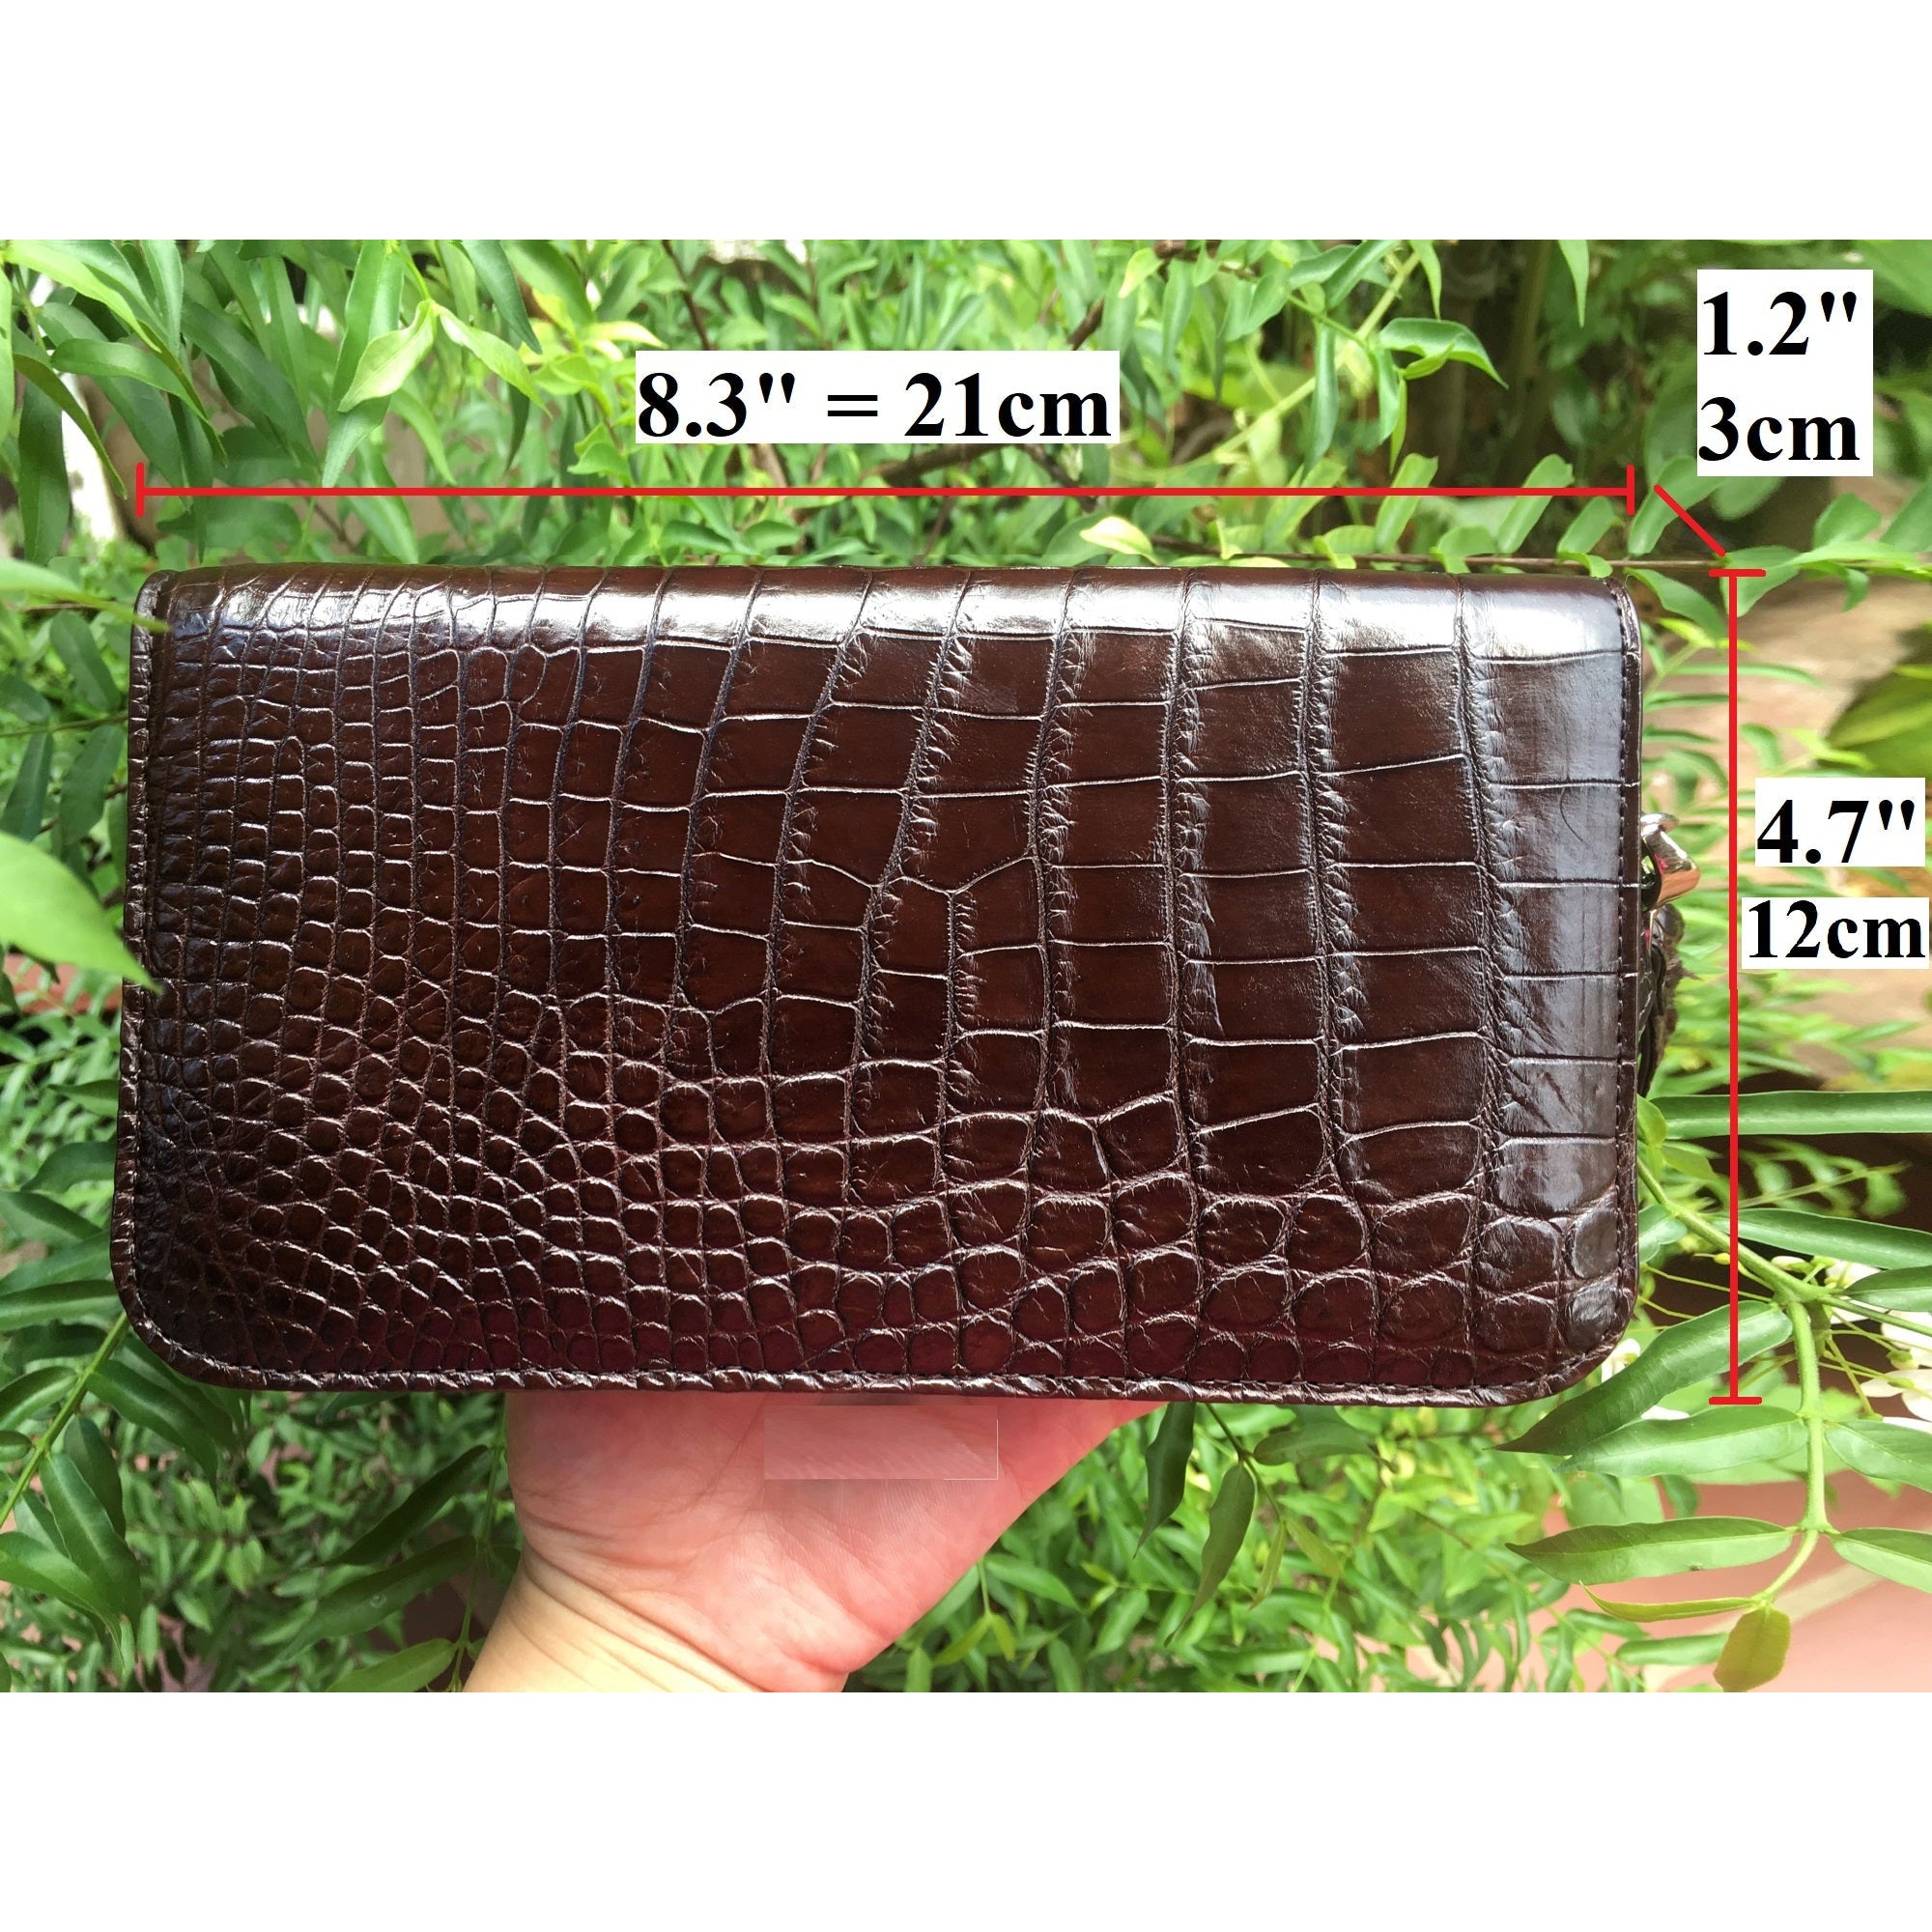 Women's Long Alligator Leather Purse Wallet